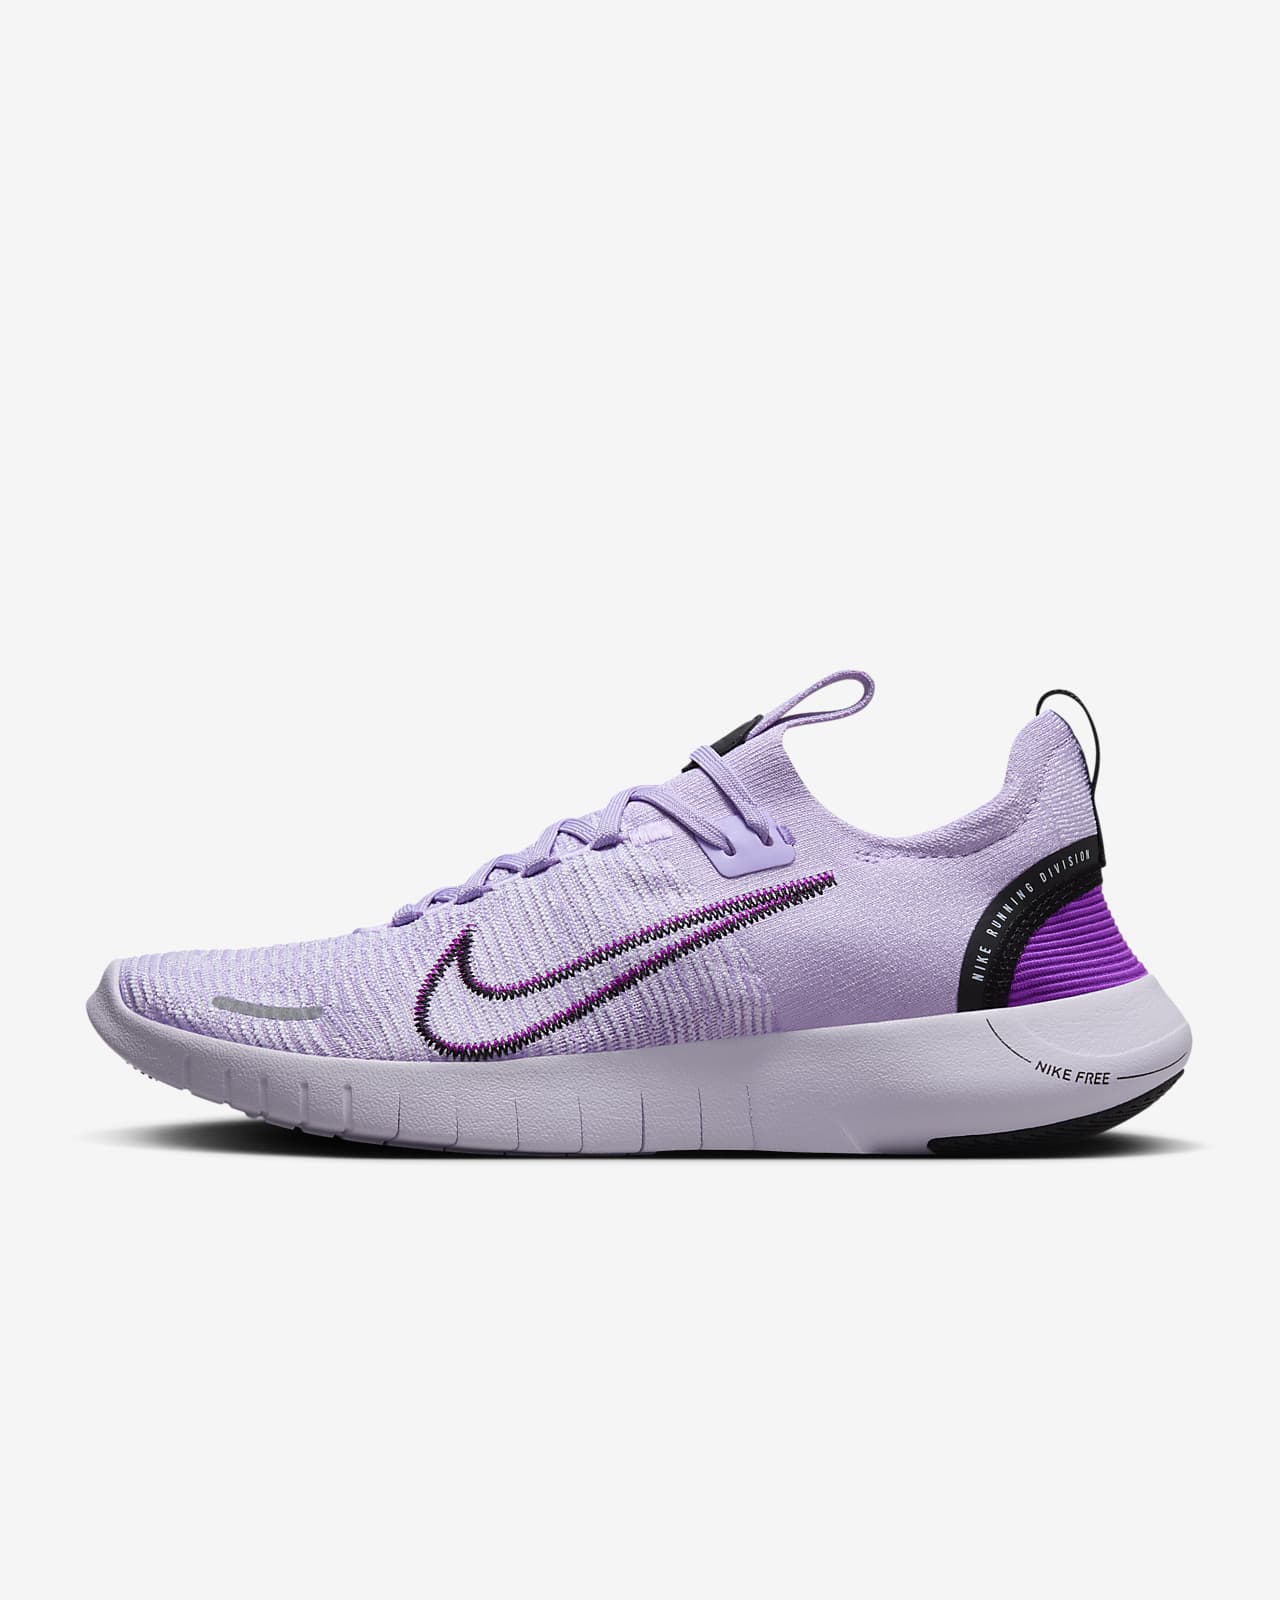 Γυναικεία παπούτσια για τρέξιμο σε δρόμο Nike Free RN NN